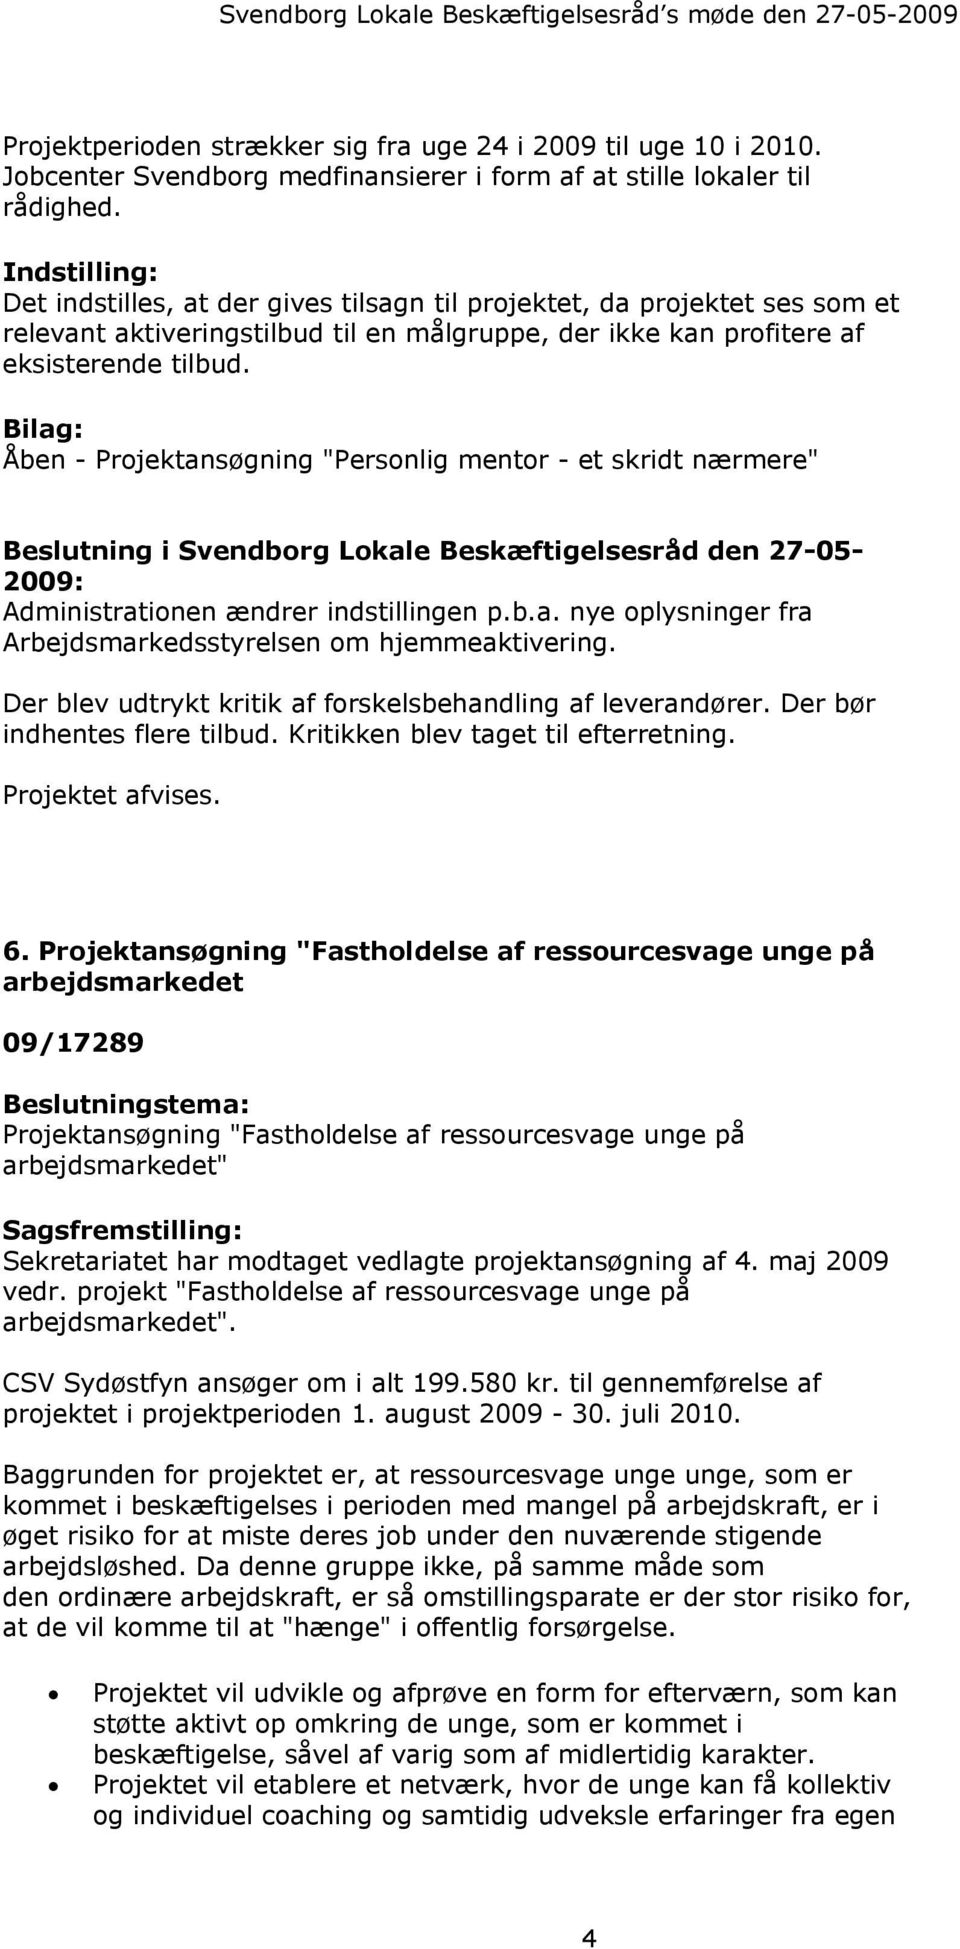 Bilag: Åben - Projektansøgning "Personlig mentor - et skridt nærmere" Beslutning i Svendborg Lokale Beskæftigelsesråd den 27-05- 2009: Administrationen ændrer indstillingen p.b.a. nye oplysninger fra Arbejdsmarkedsstyrelsen om hjemmeaktivering.